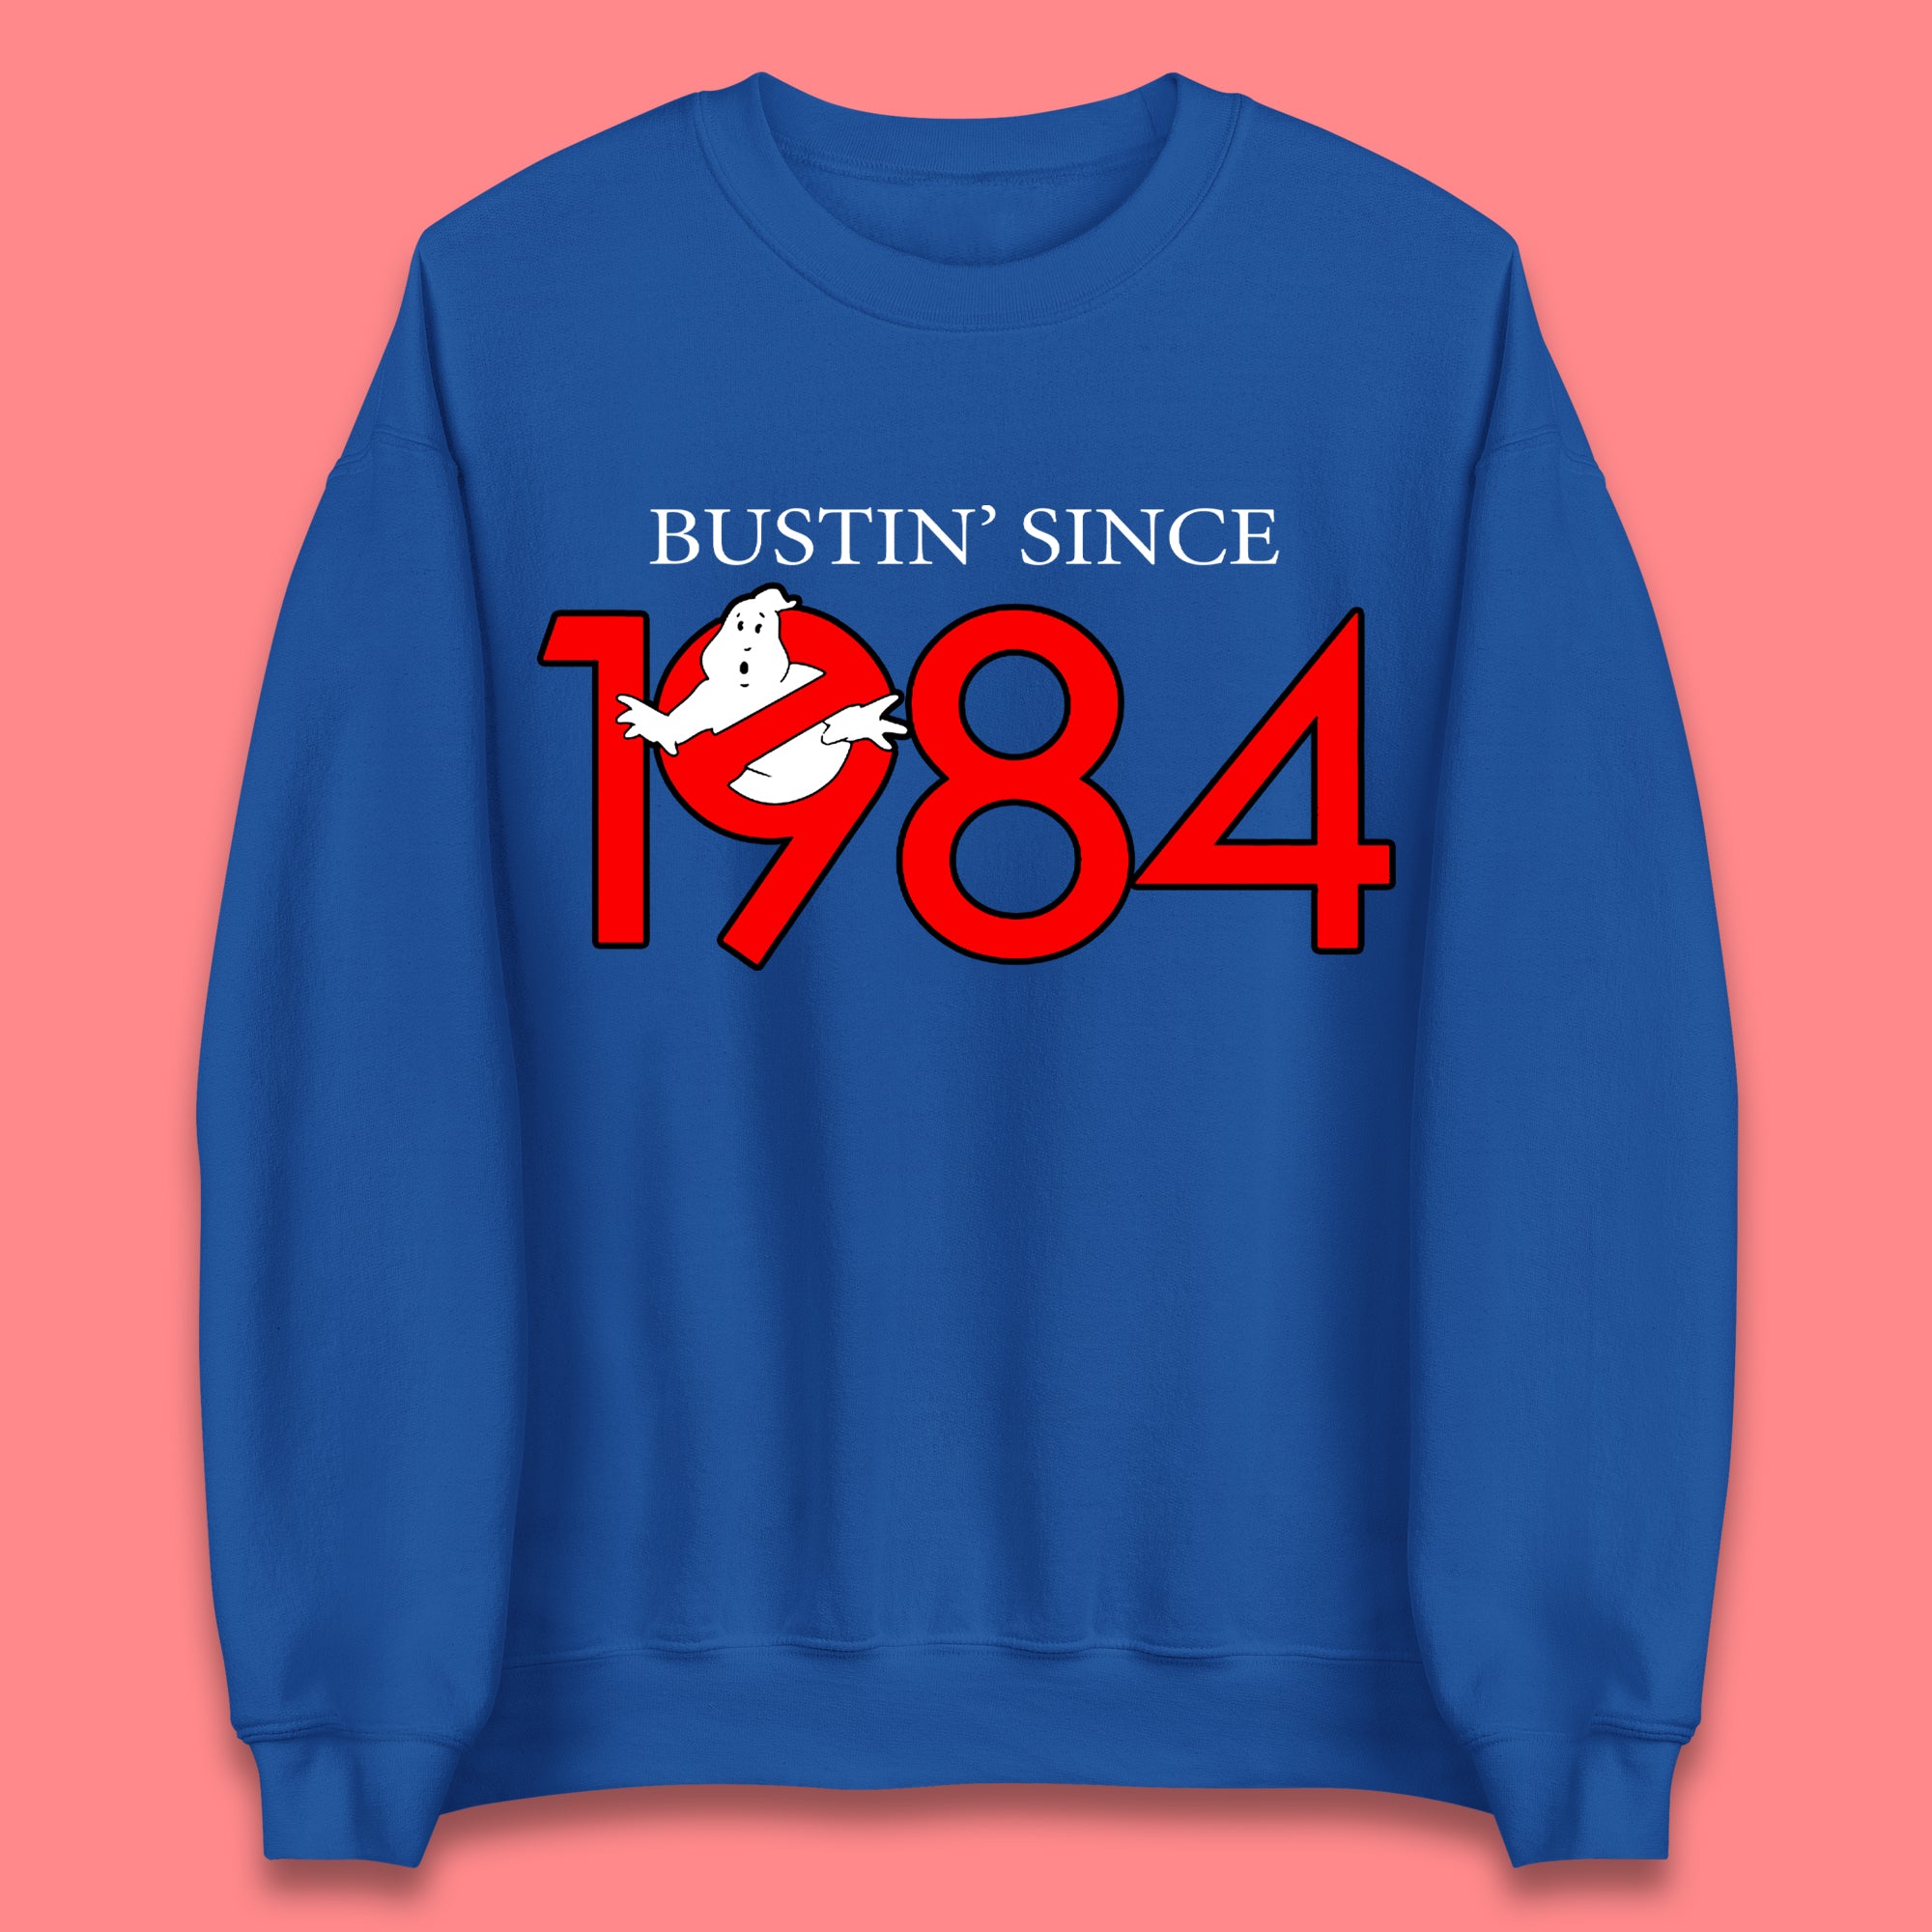 Ghostbusters Bustin' Since 1984 Unisex Sweatshirt